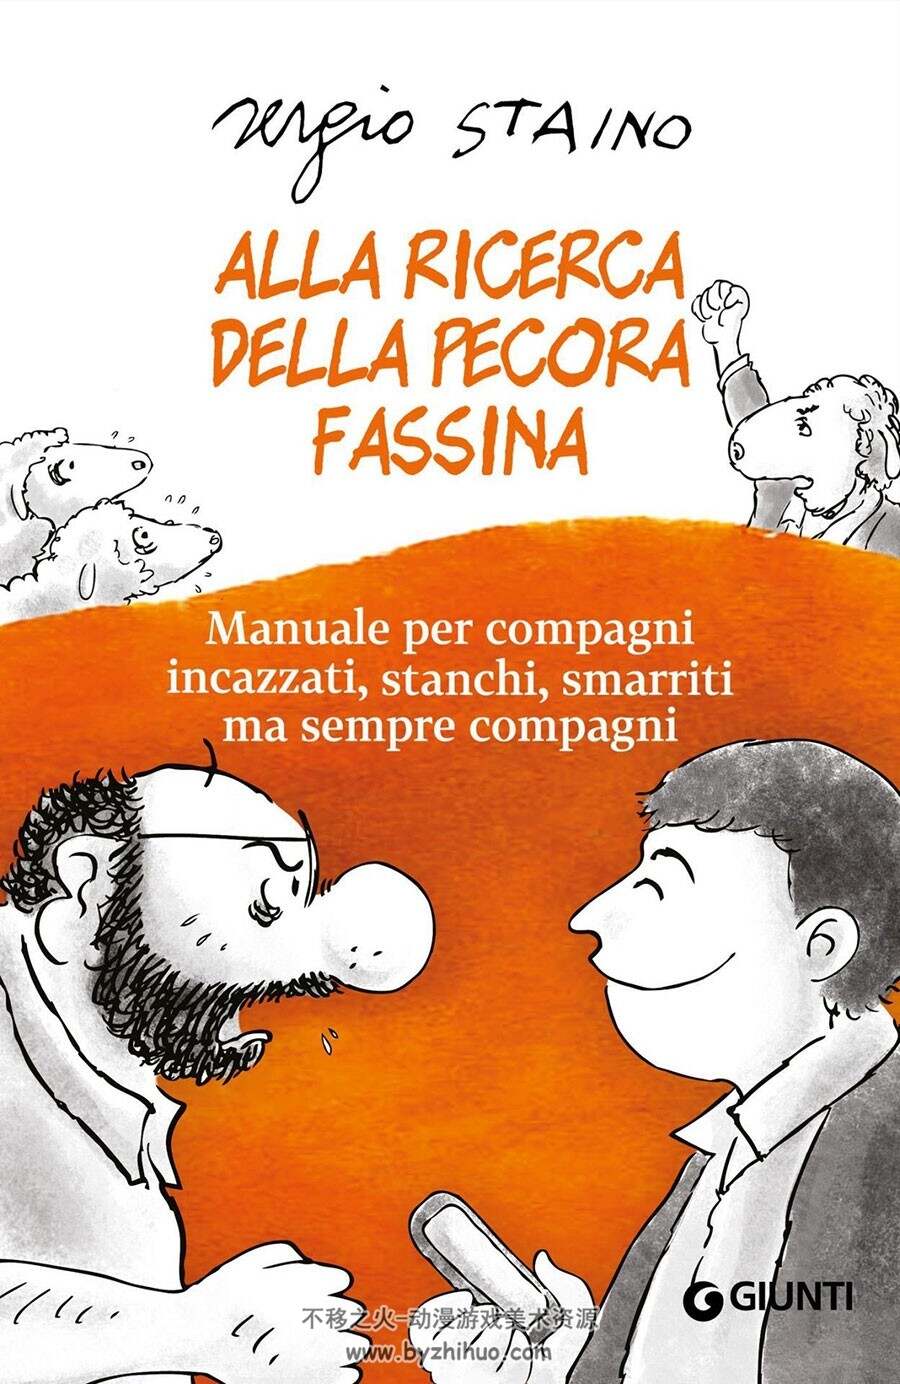 Alla Ricerca Della Pecora Fassina 一册 Sergio Staino 漫画下载